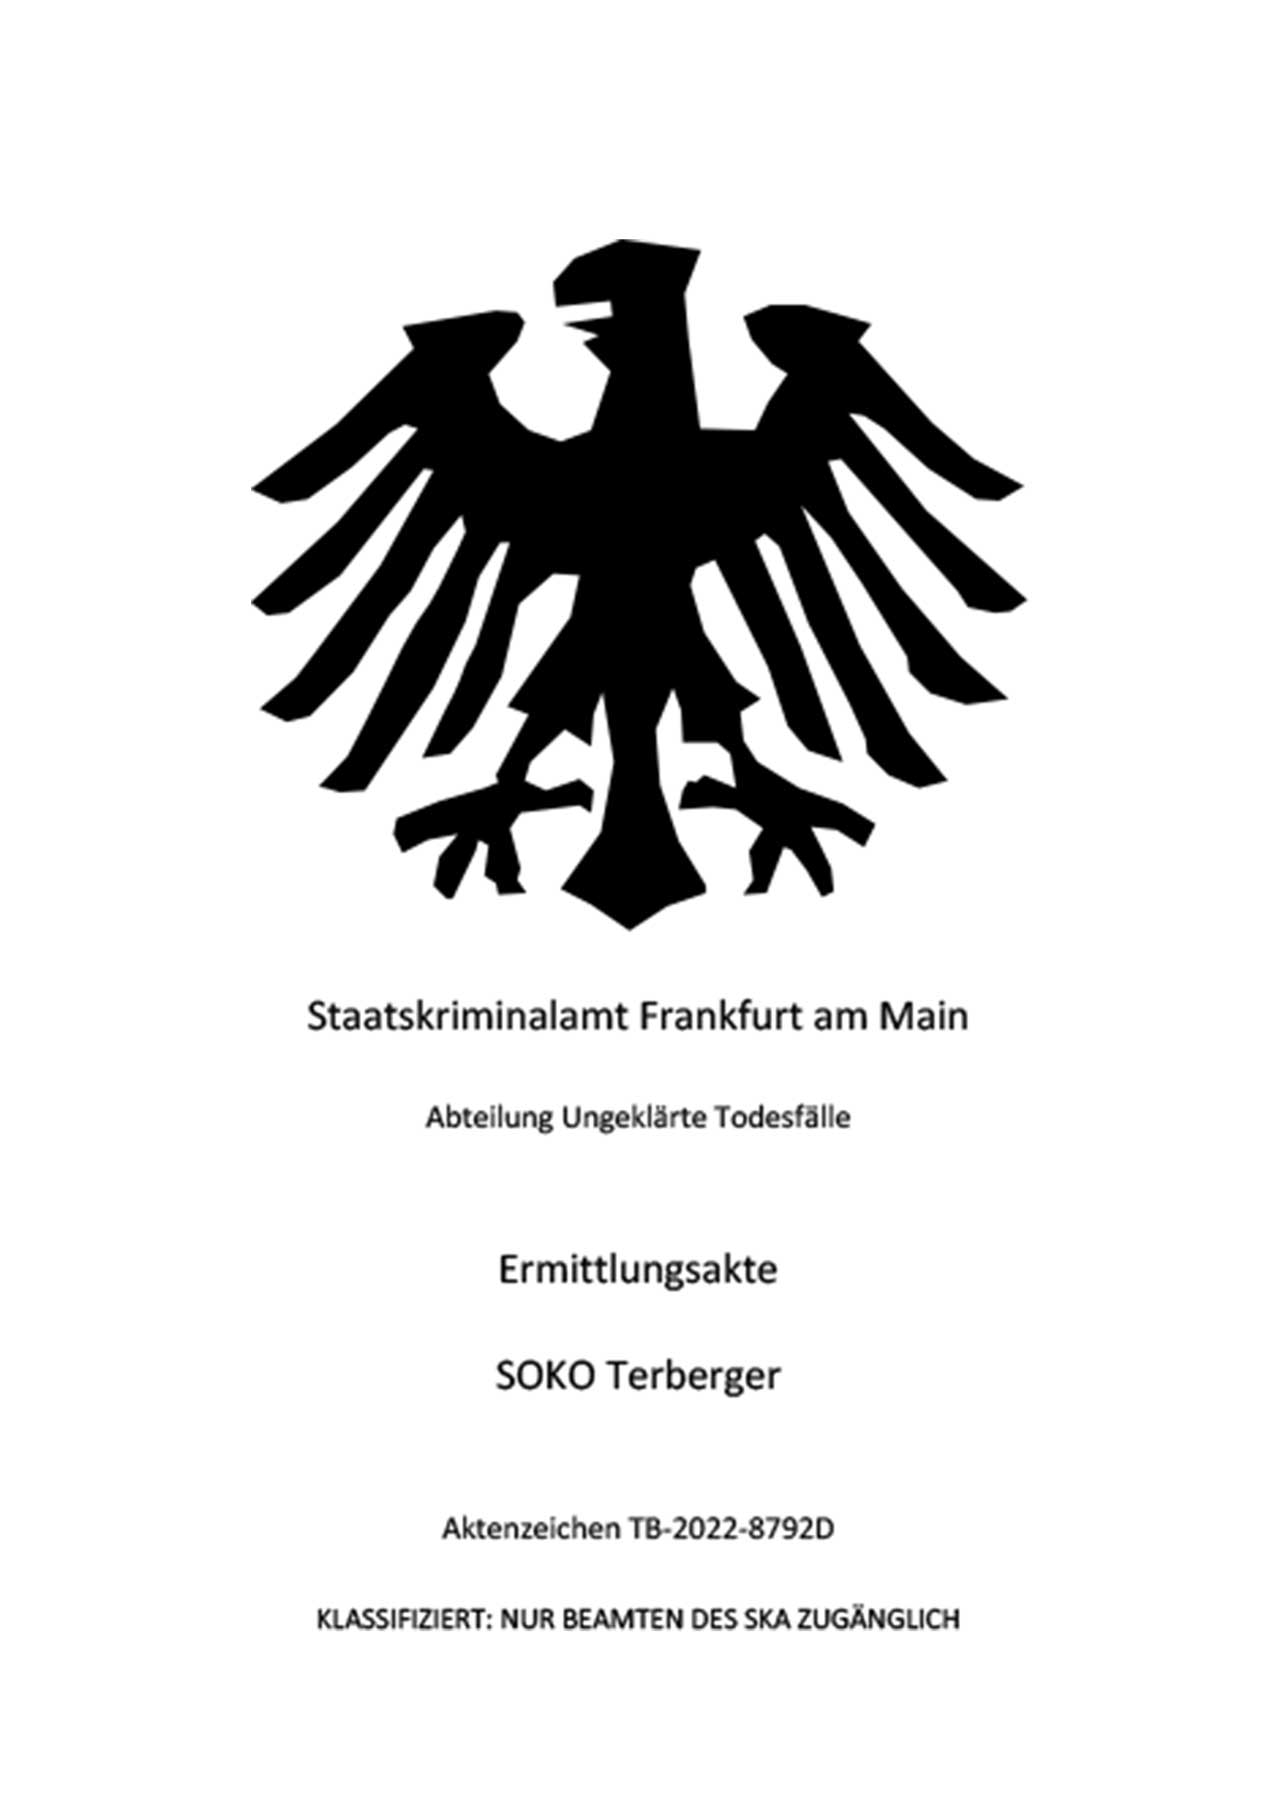 Ein Adler als Logo und der Text: „Staatskriminalamt Frankfurt am Main, Abteilung Ungeklärte Todesfälle, Ermittlungsakte SOKO Terberger, Aktenzeichen TB-2022-8792D; KLASSIFIZIERT: NUR BEAMTEN DES SKA ZUGÄNGLICH“